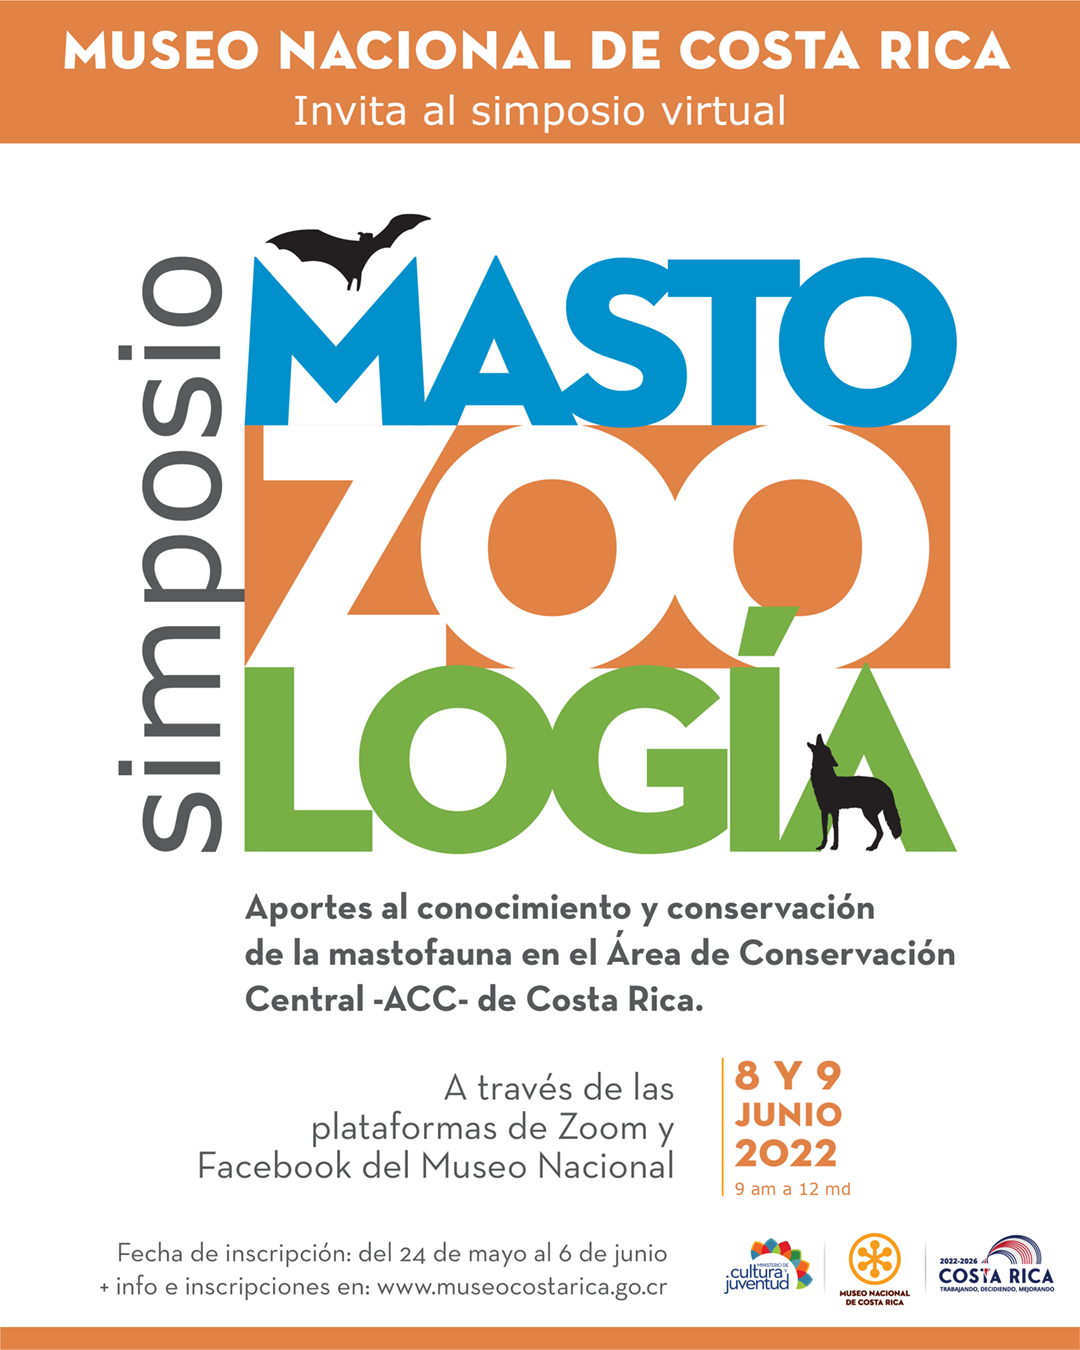 Invitación al Simposio de Mastozoología - Museo Nacional de Costa Rica